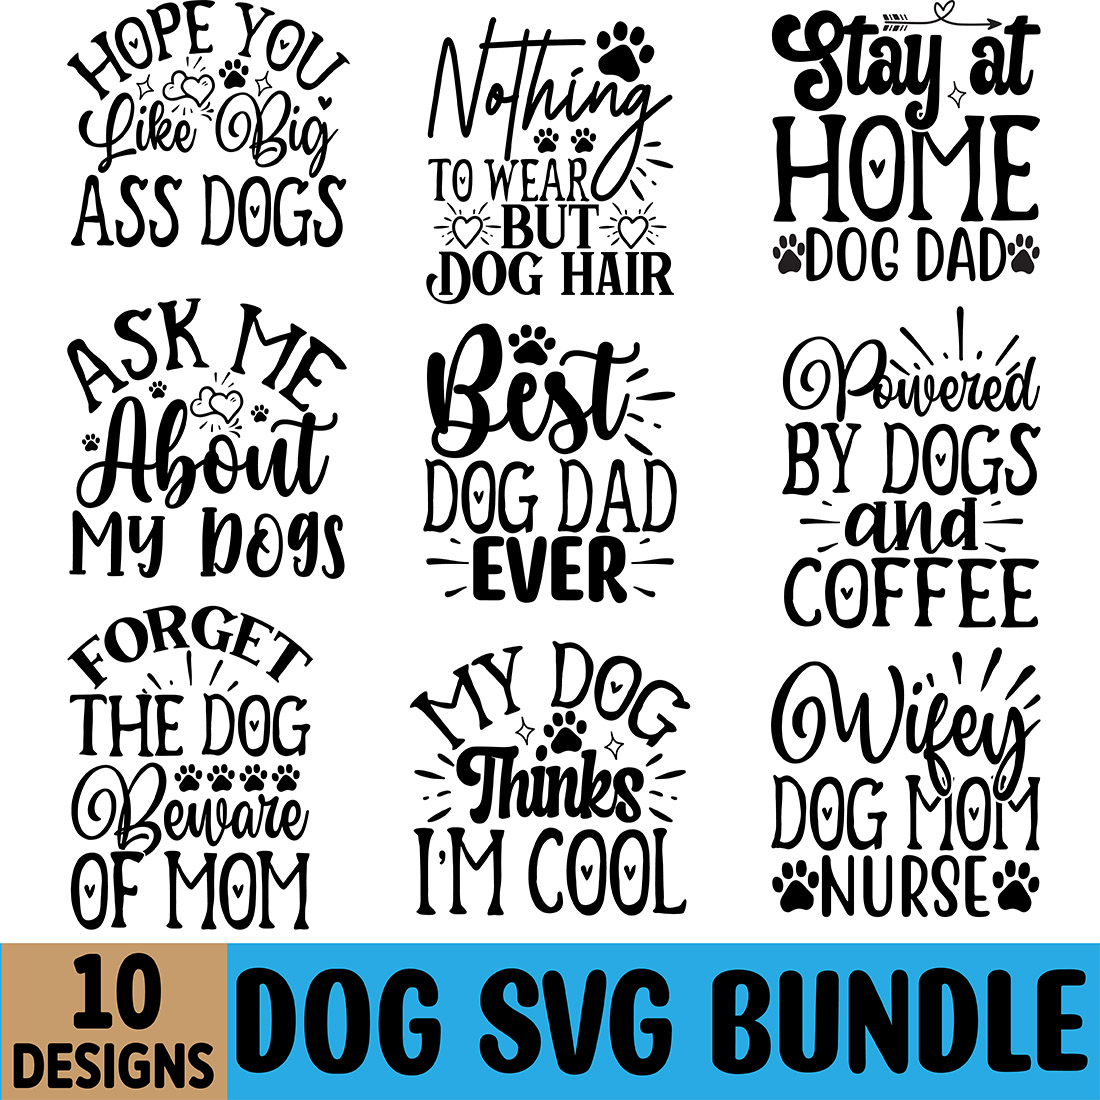 Dog SVG Design Bundle cover image.